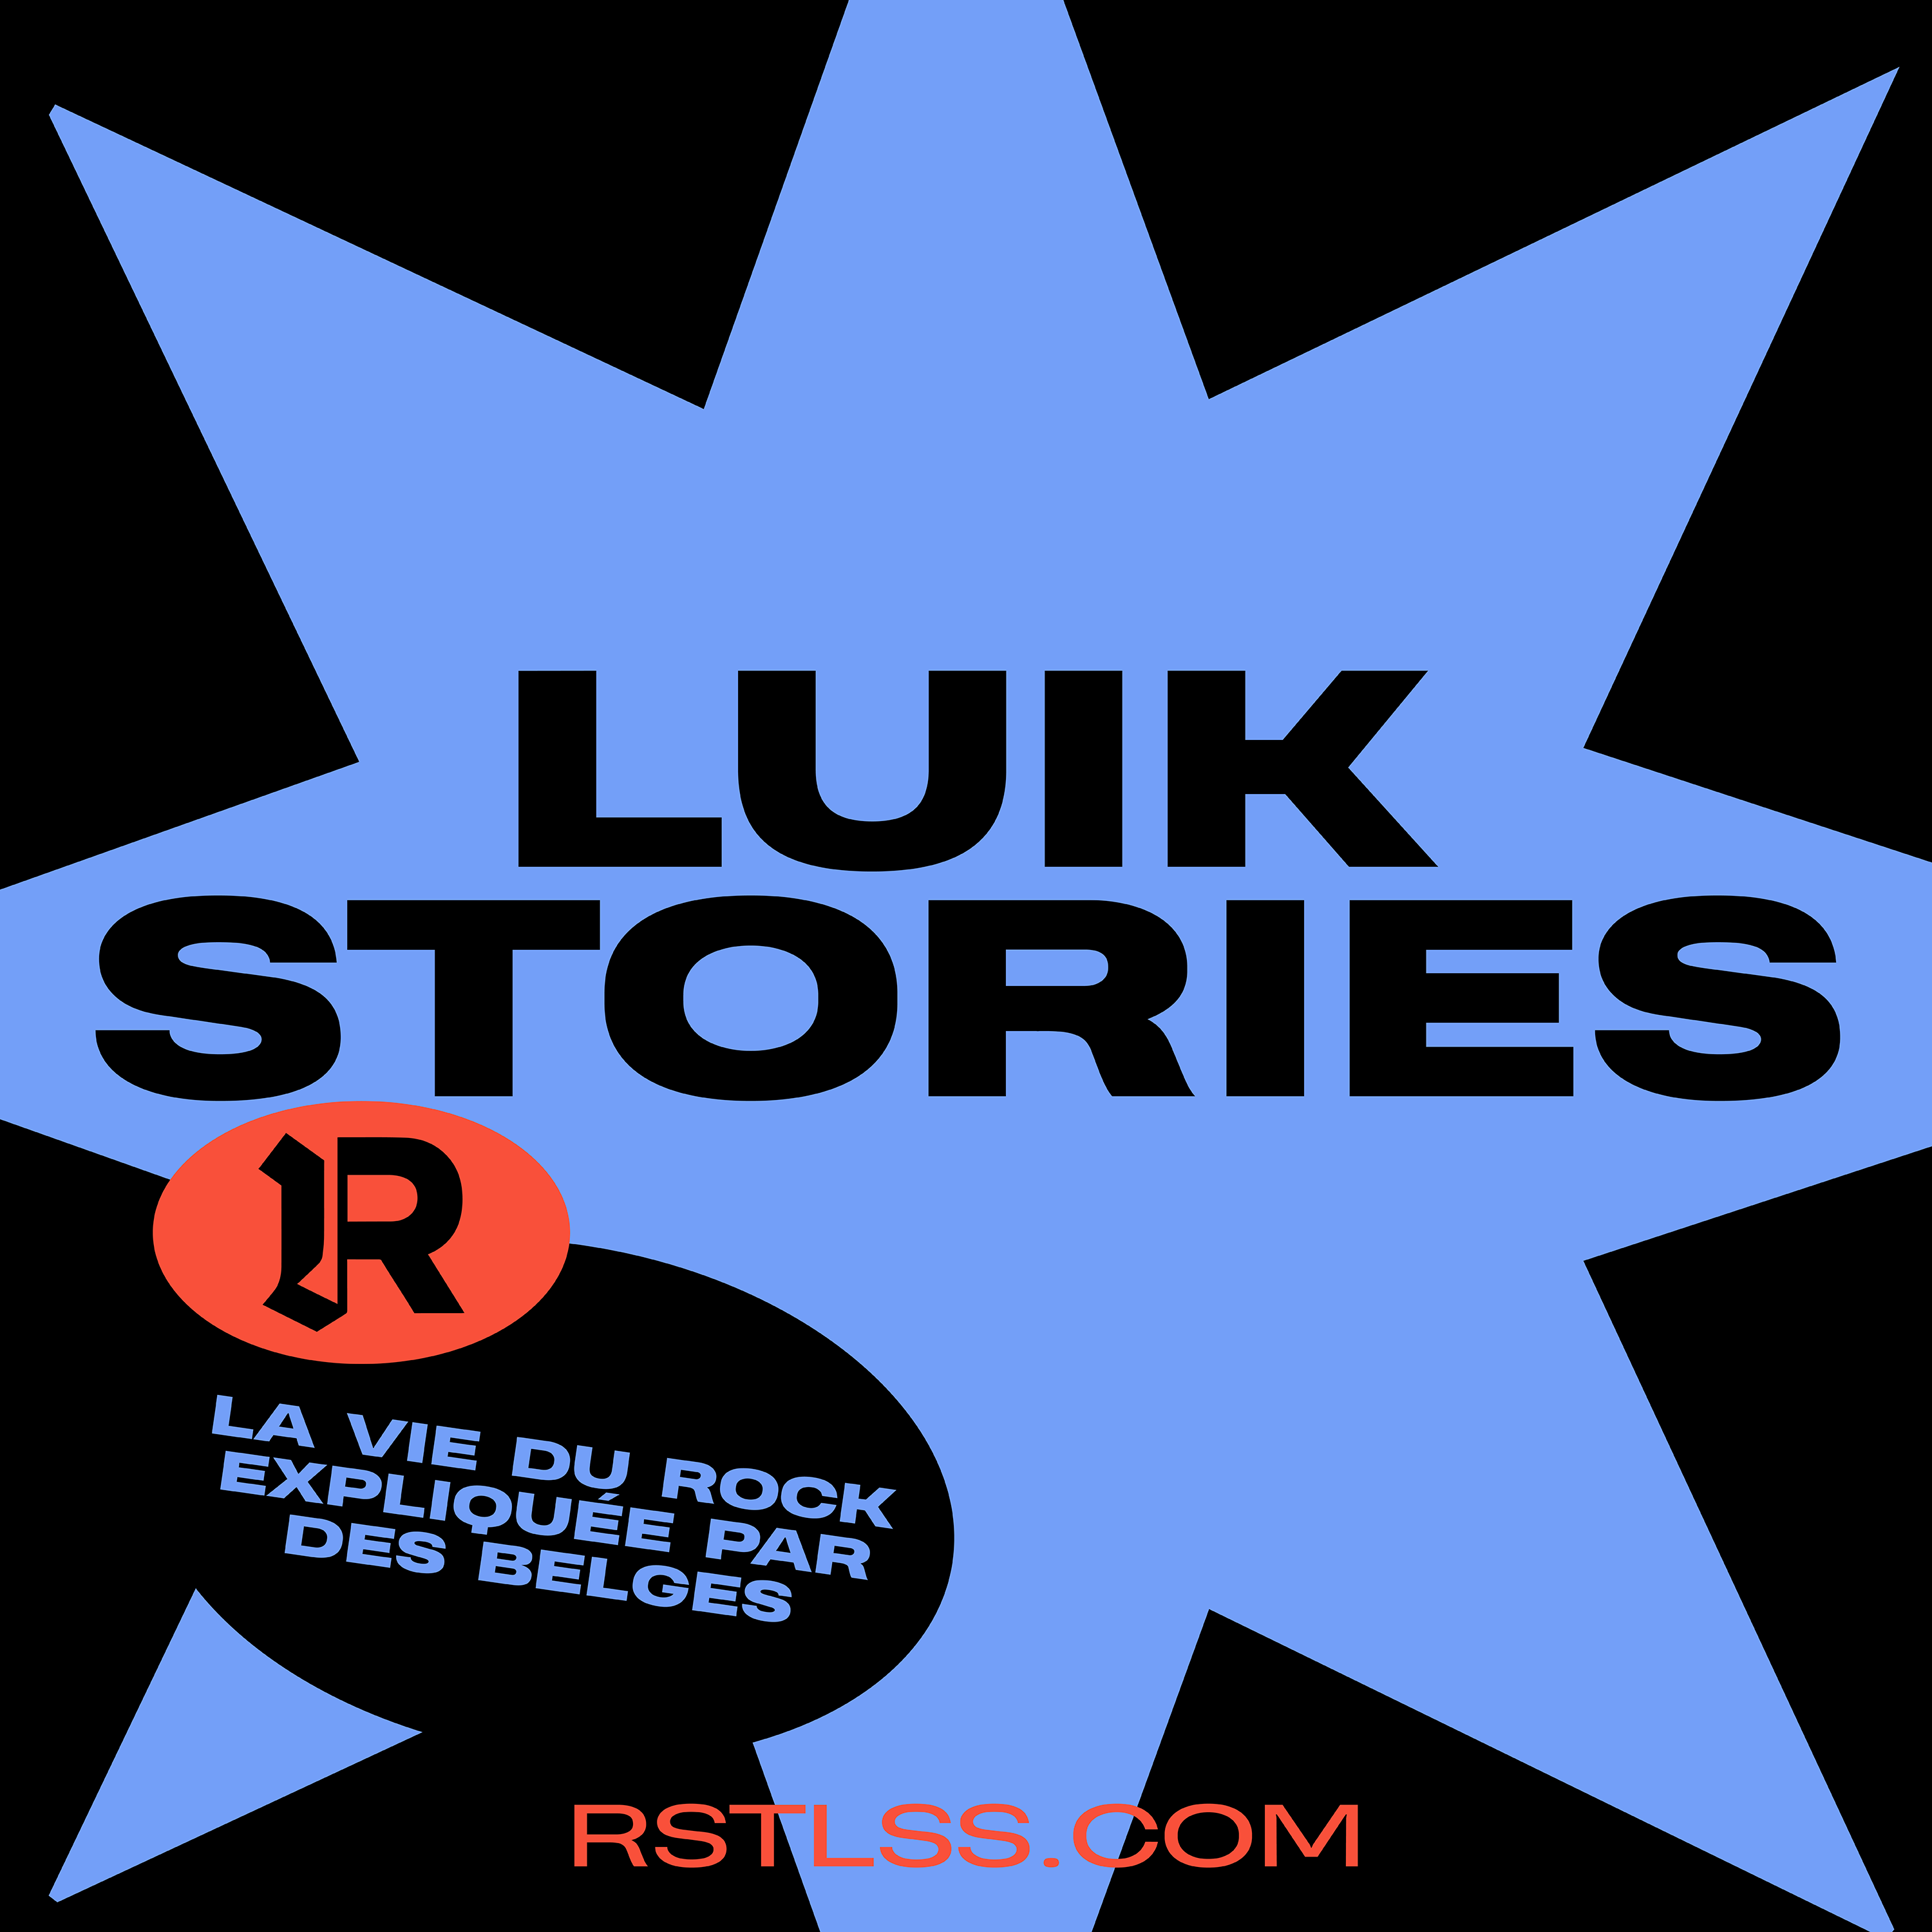 LUIK STORIES #2 – Lysistrata